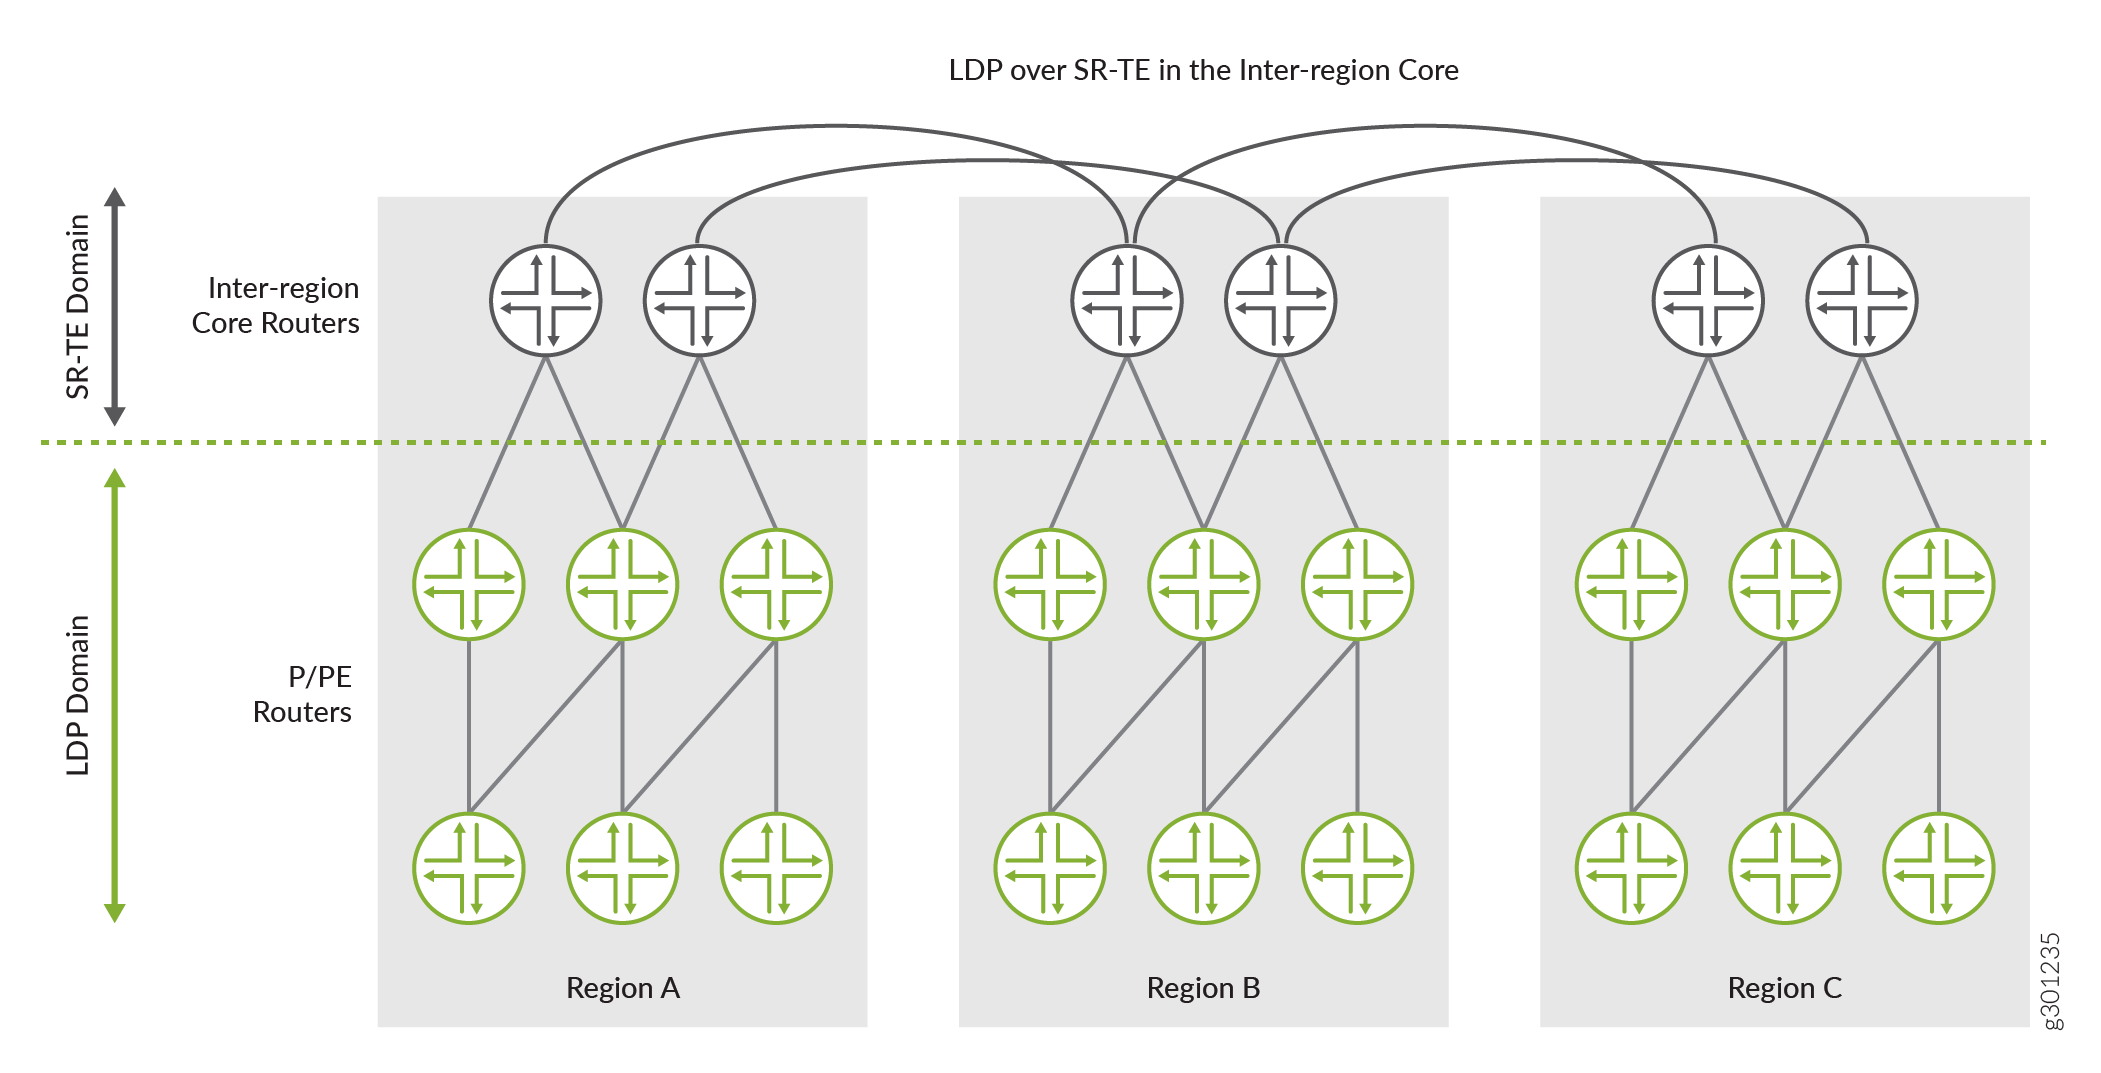 LDP sobre SR-TE entre redes centrales interregionales